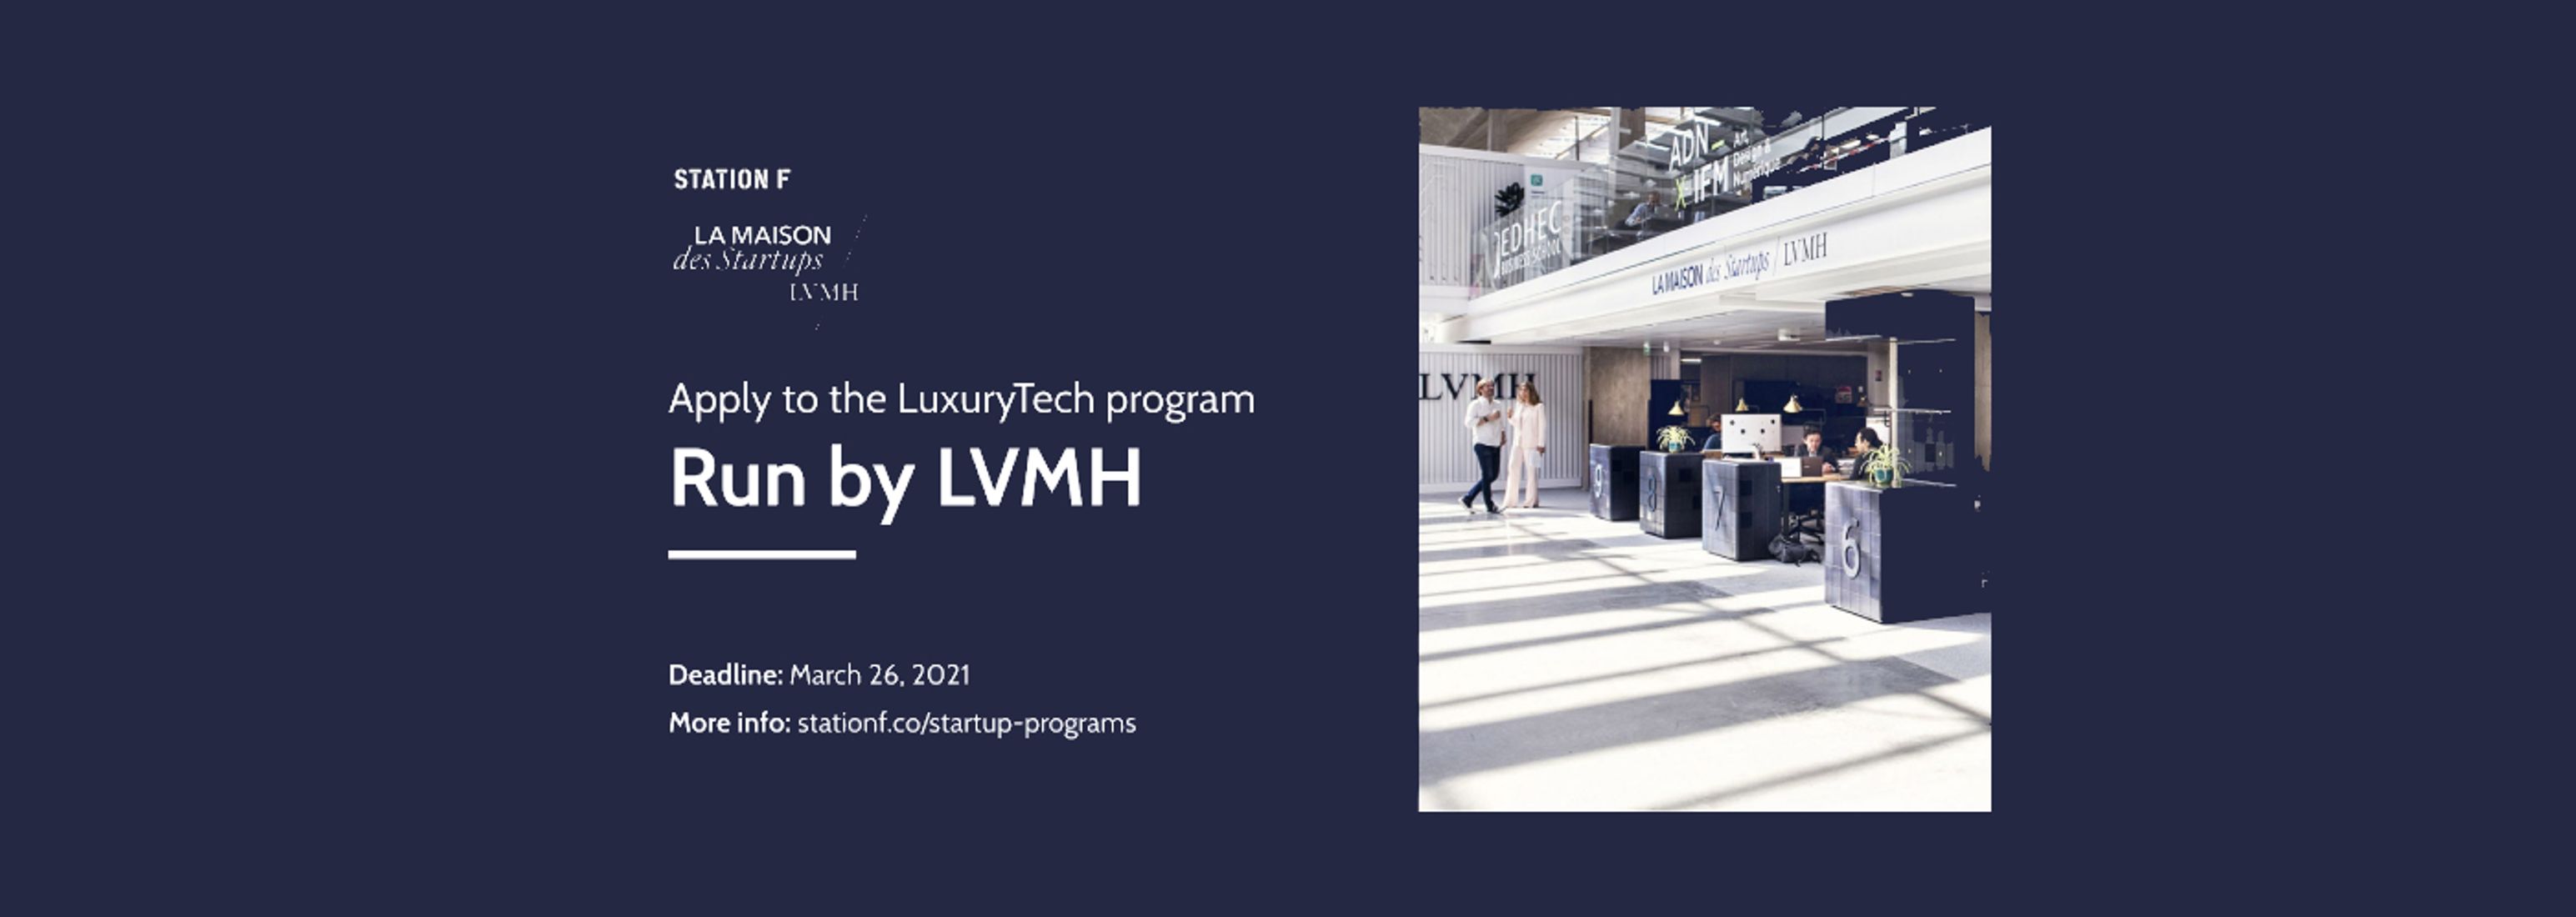 La Maison des Startups LVMH Event Tickets